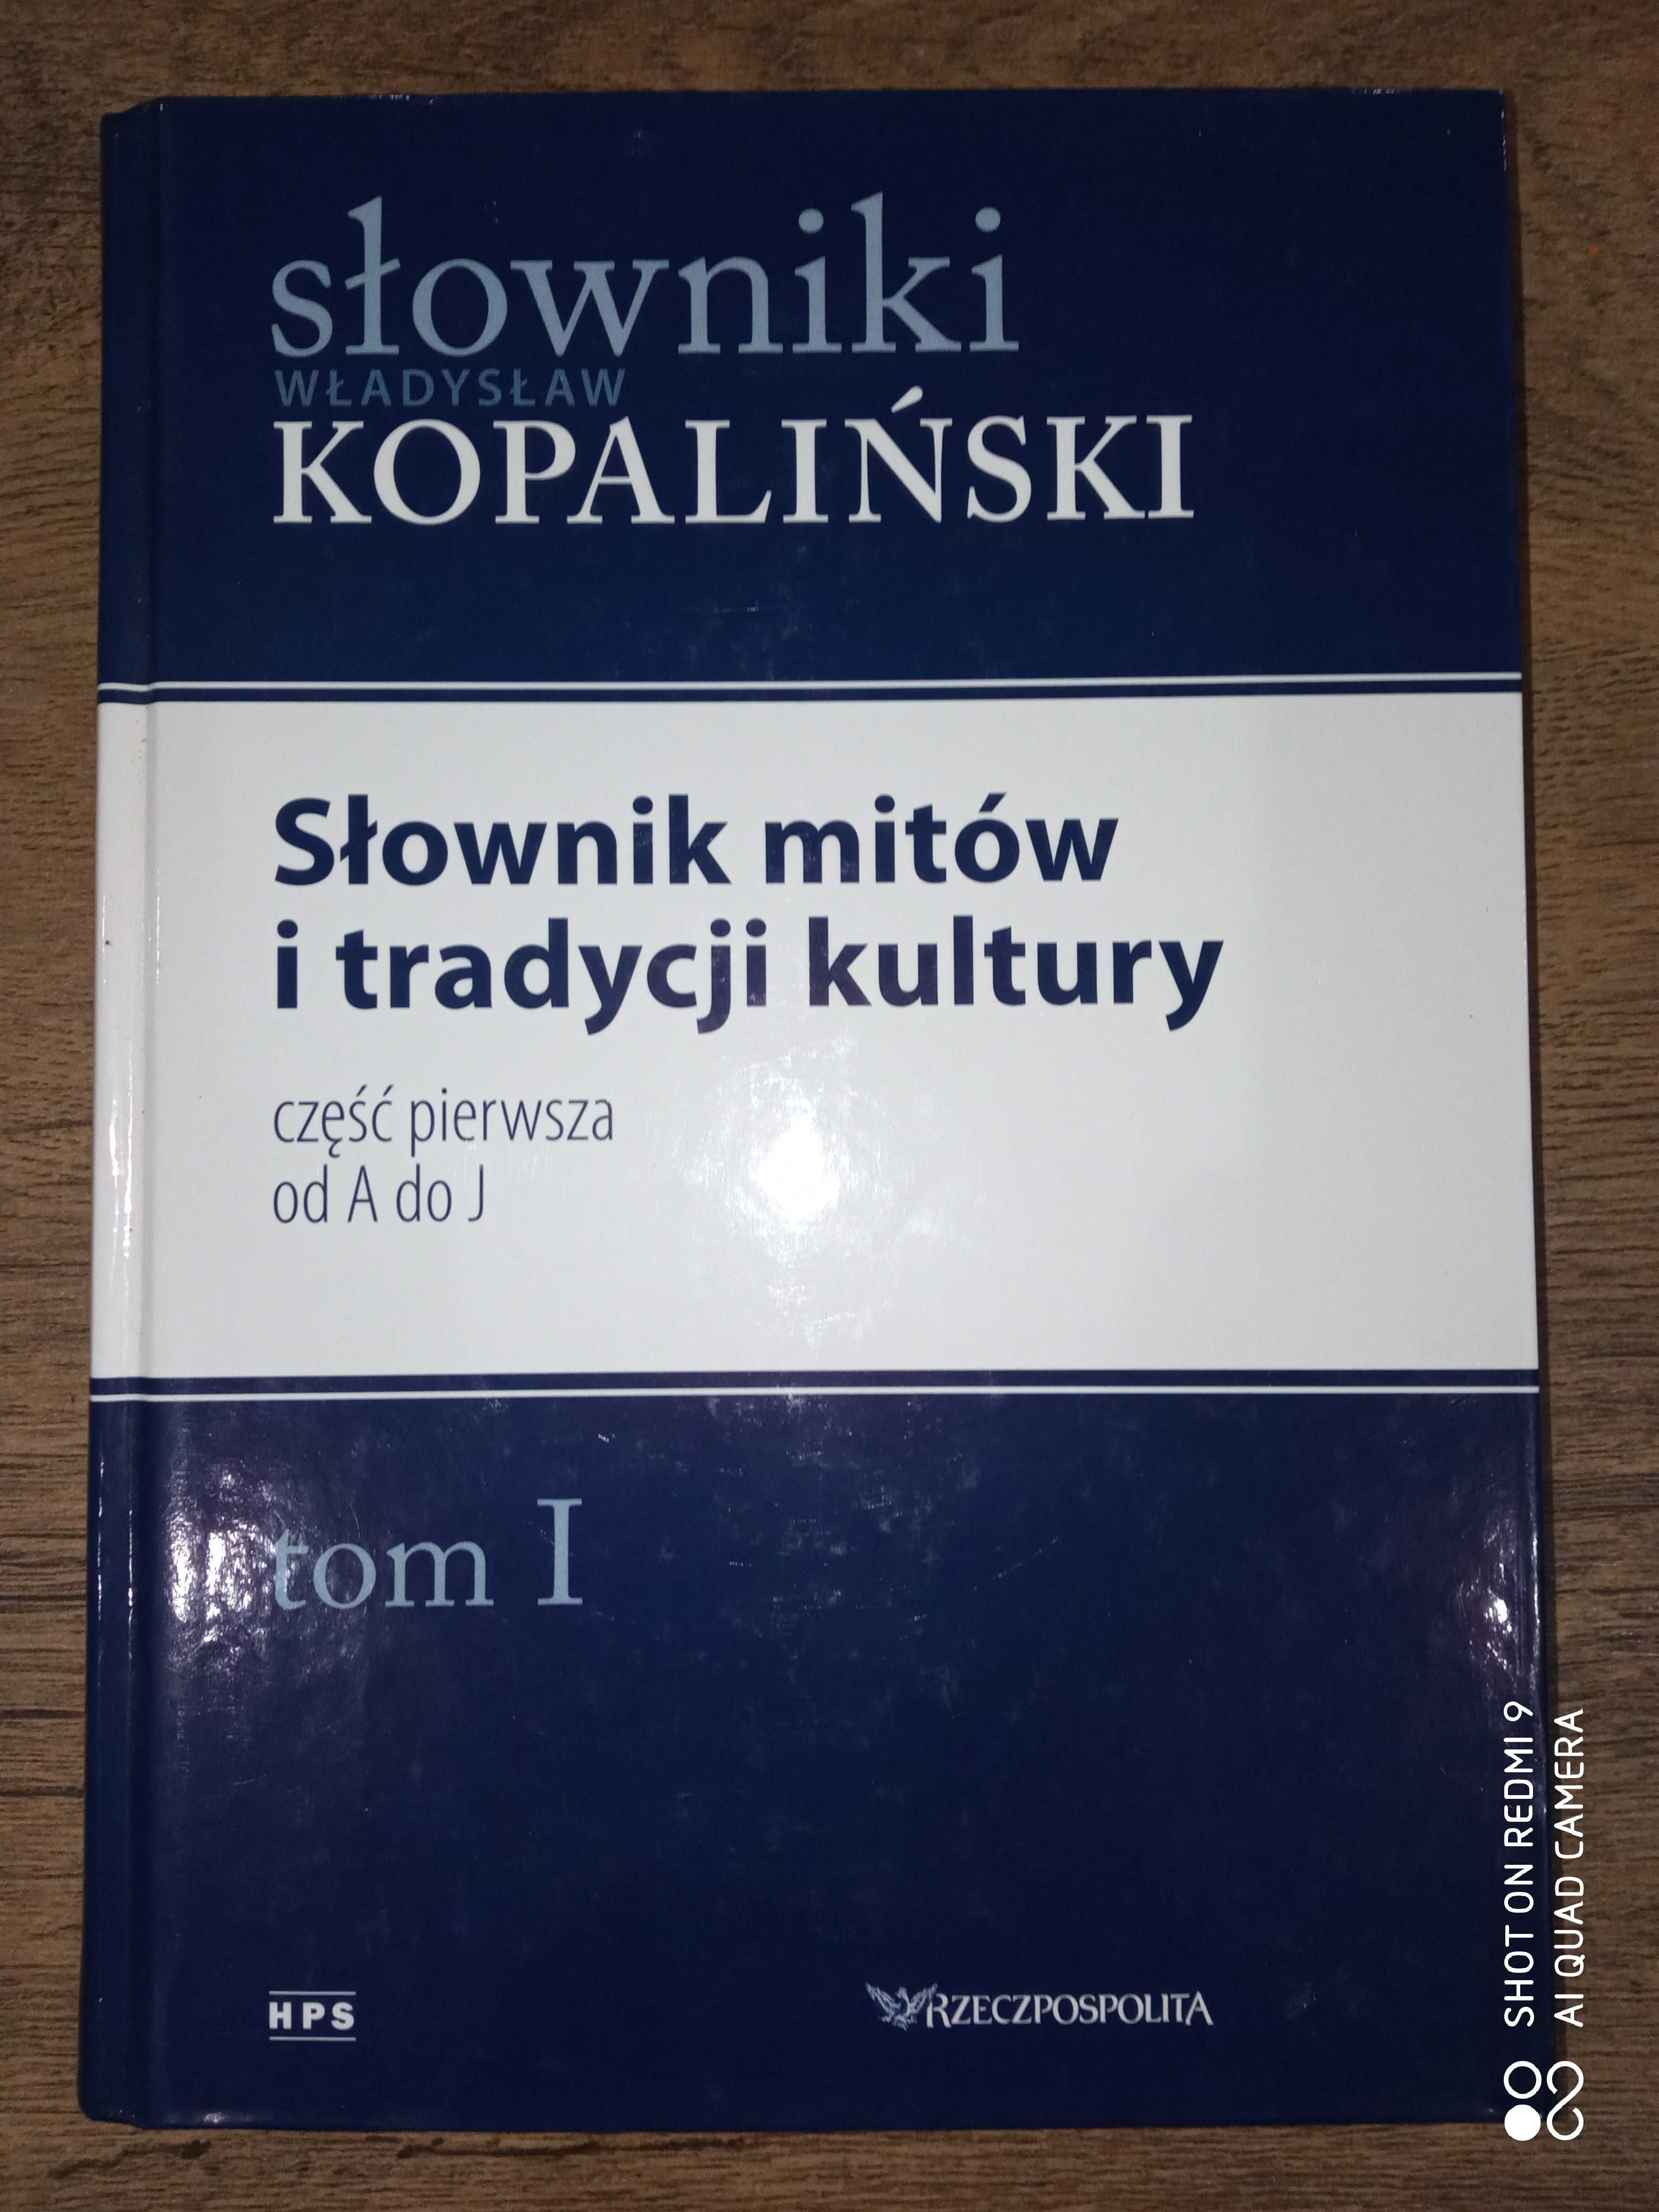 Słownik mitów i tradycji kultury Kopaliński